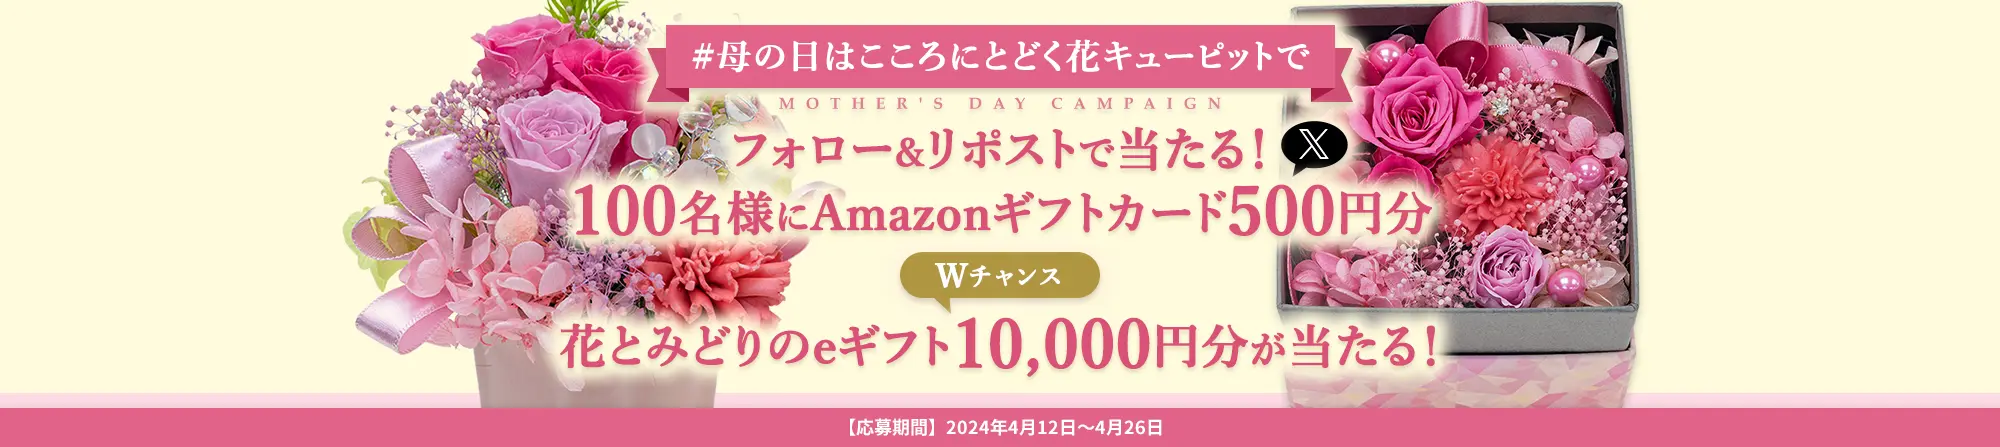 「#母の日はこころにとどく花キューピットで」キャンペーン 